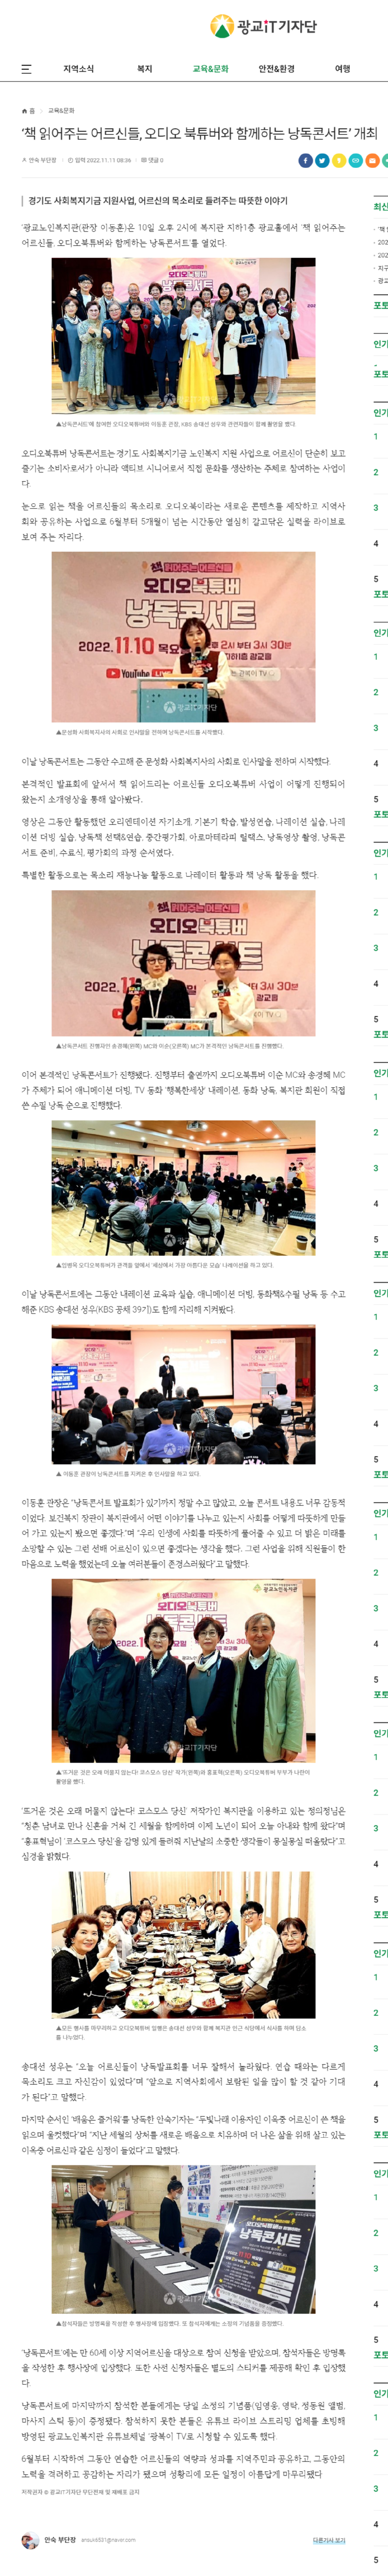 ‘책 읽어주는 어르신들, 오디오 북튜버와 함께하는 낭독콘서트’ 개최.png